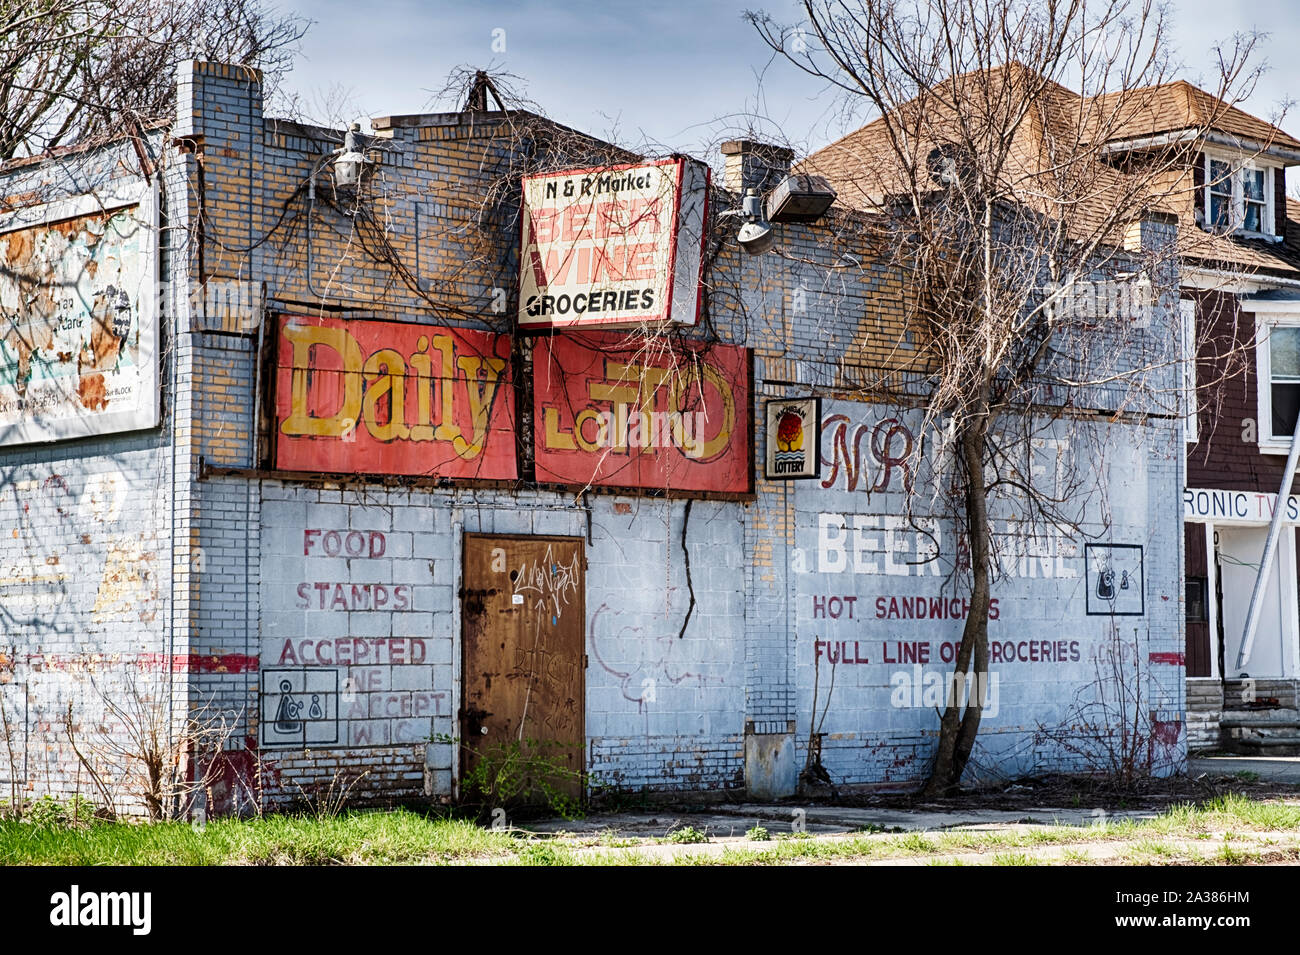 DETROIT, Michigan - Aprile 27, 2019: un quartiere chiuso store a Detroit, Michigan è simbolico del degrado urbano in tutta la città. Foto Stock